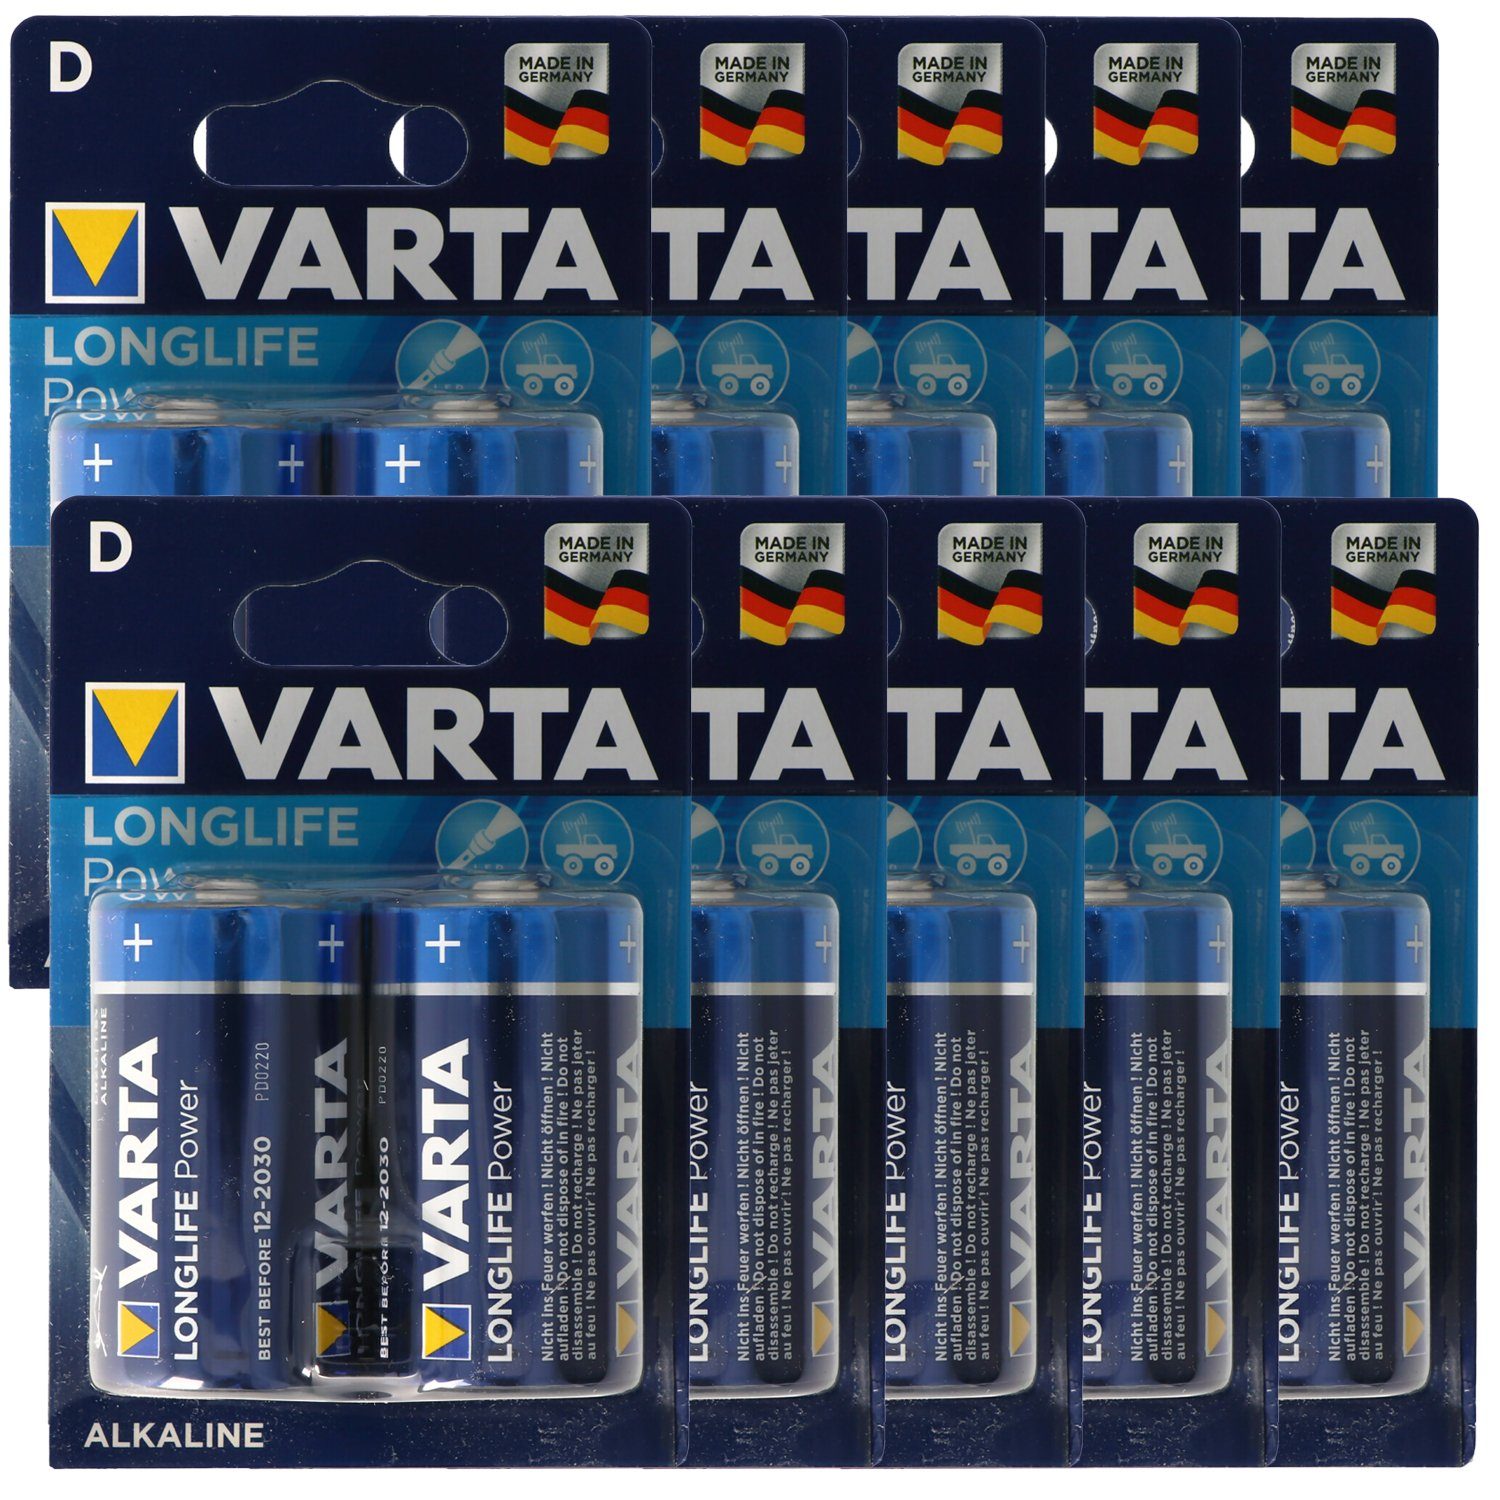 VARTA Varta Longlife Power (ehem. High Energy) Mono D 4920 Batterien 10x 2- Batterie, (1,5 V) | Batterien